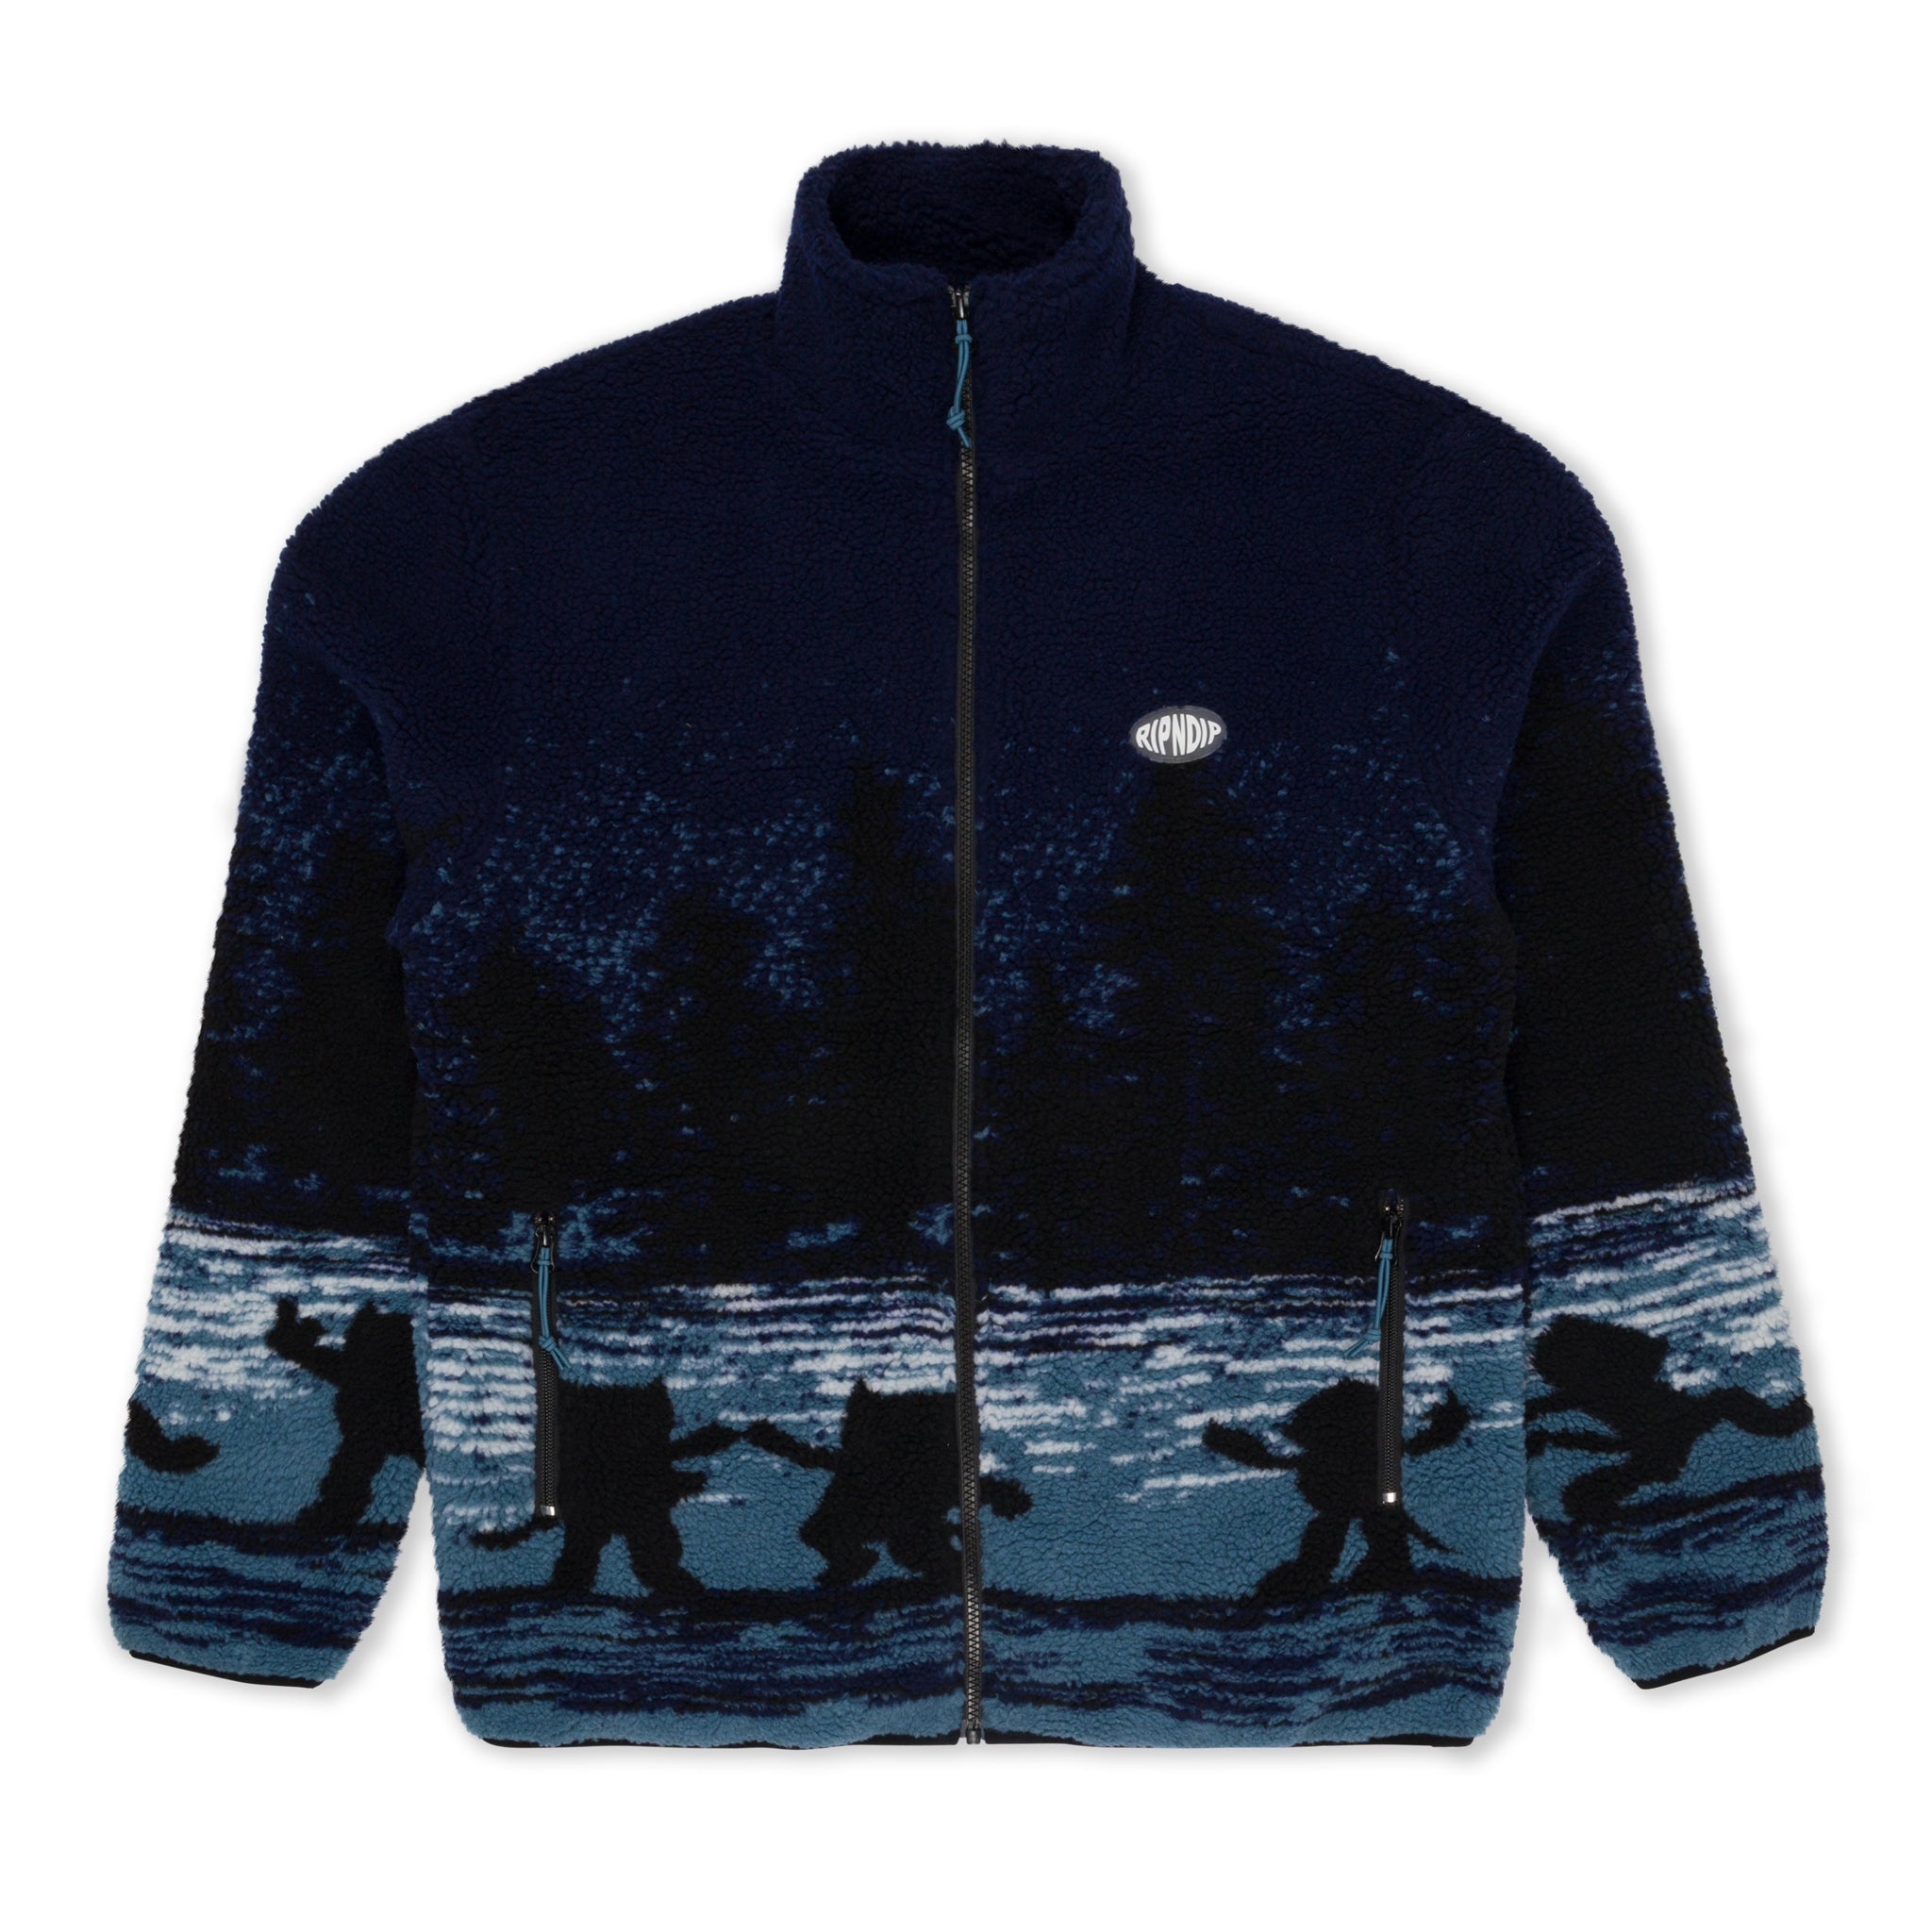 Cosmic Meadow Sherpa Jacket (Purple/Slate)